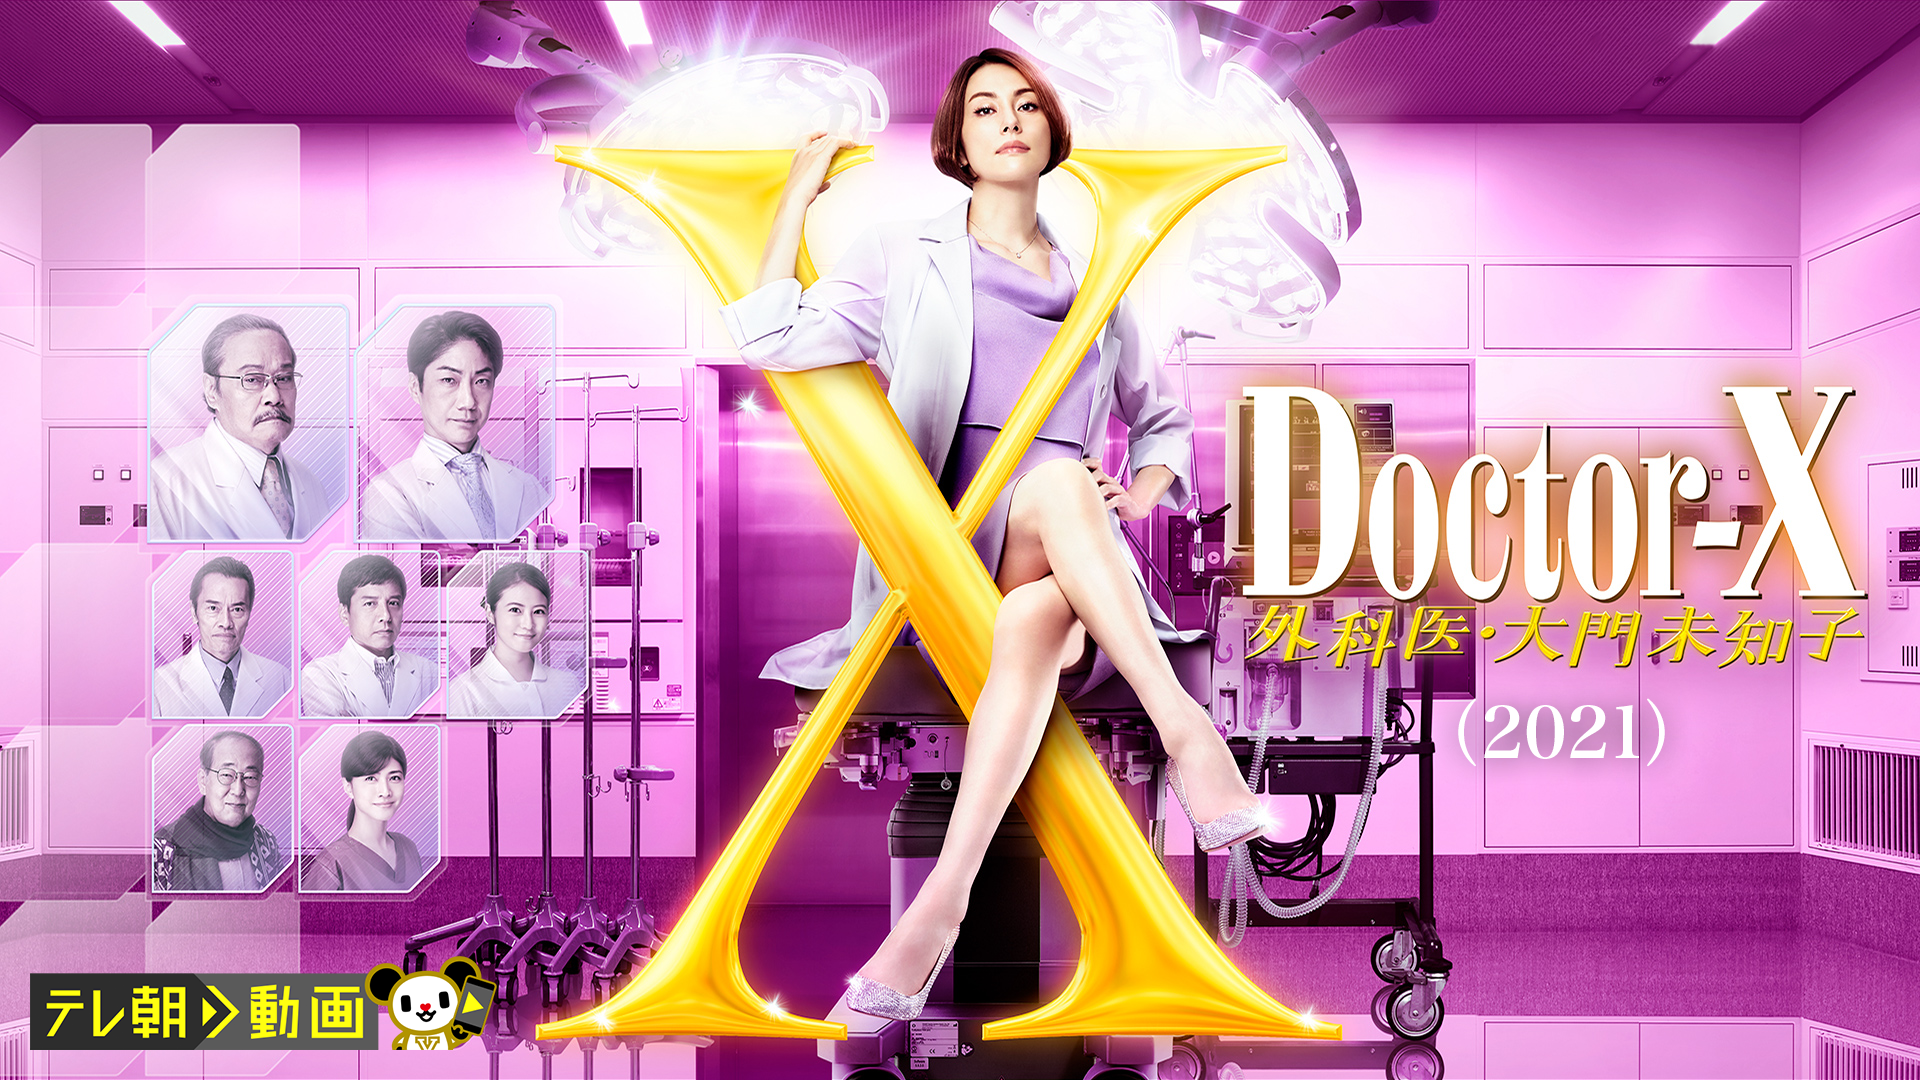 Doctor-X 1 2 3 4 5 スペシャル ドクターY 全巻 DVD - TVドラマ